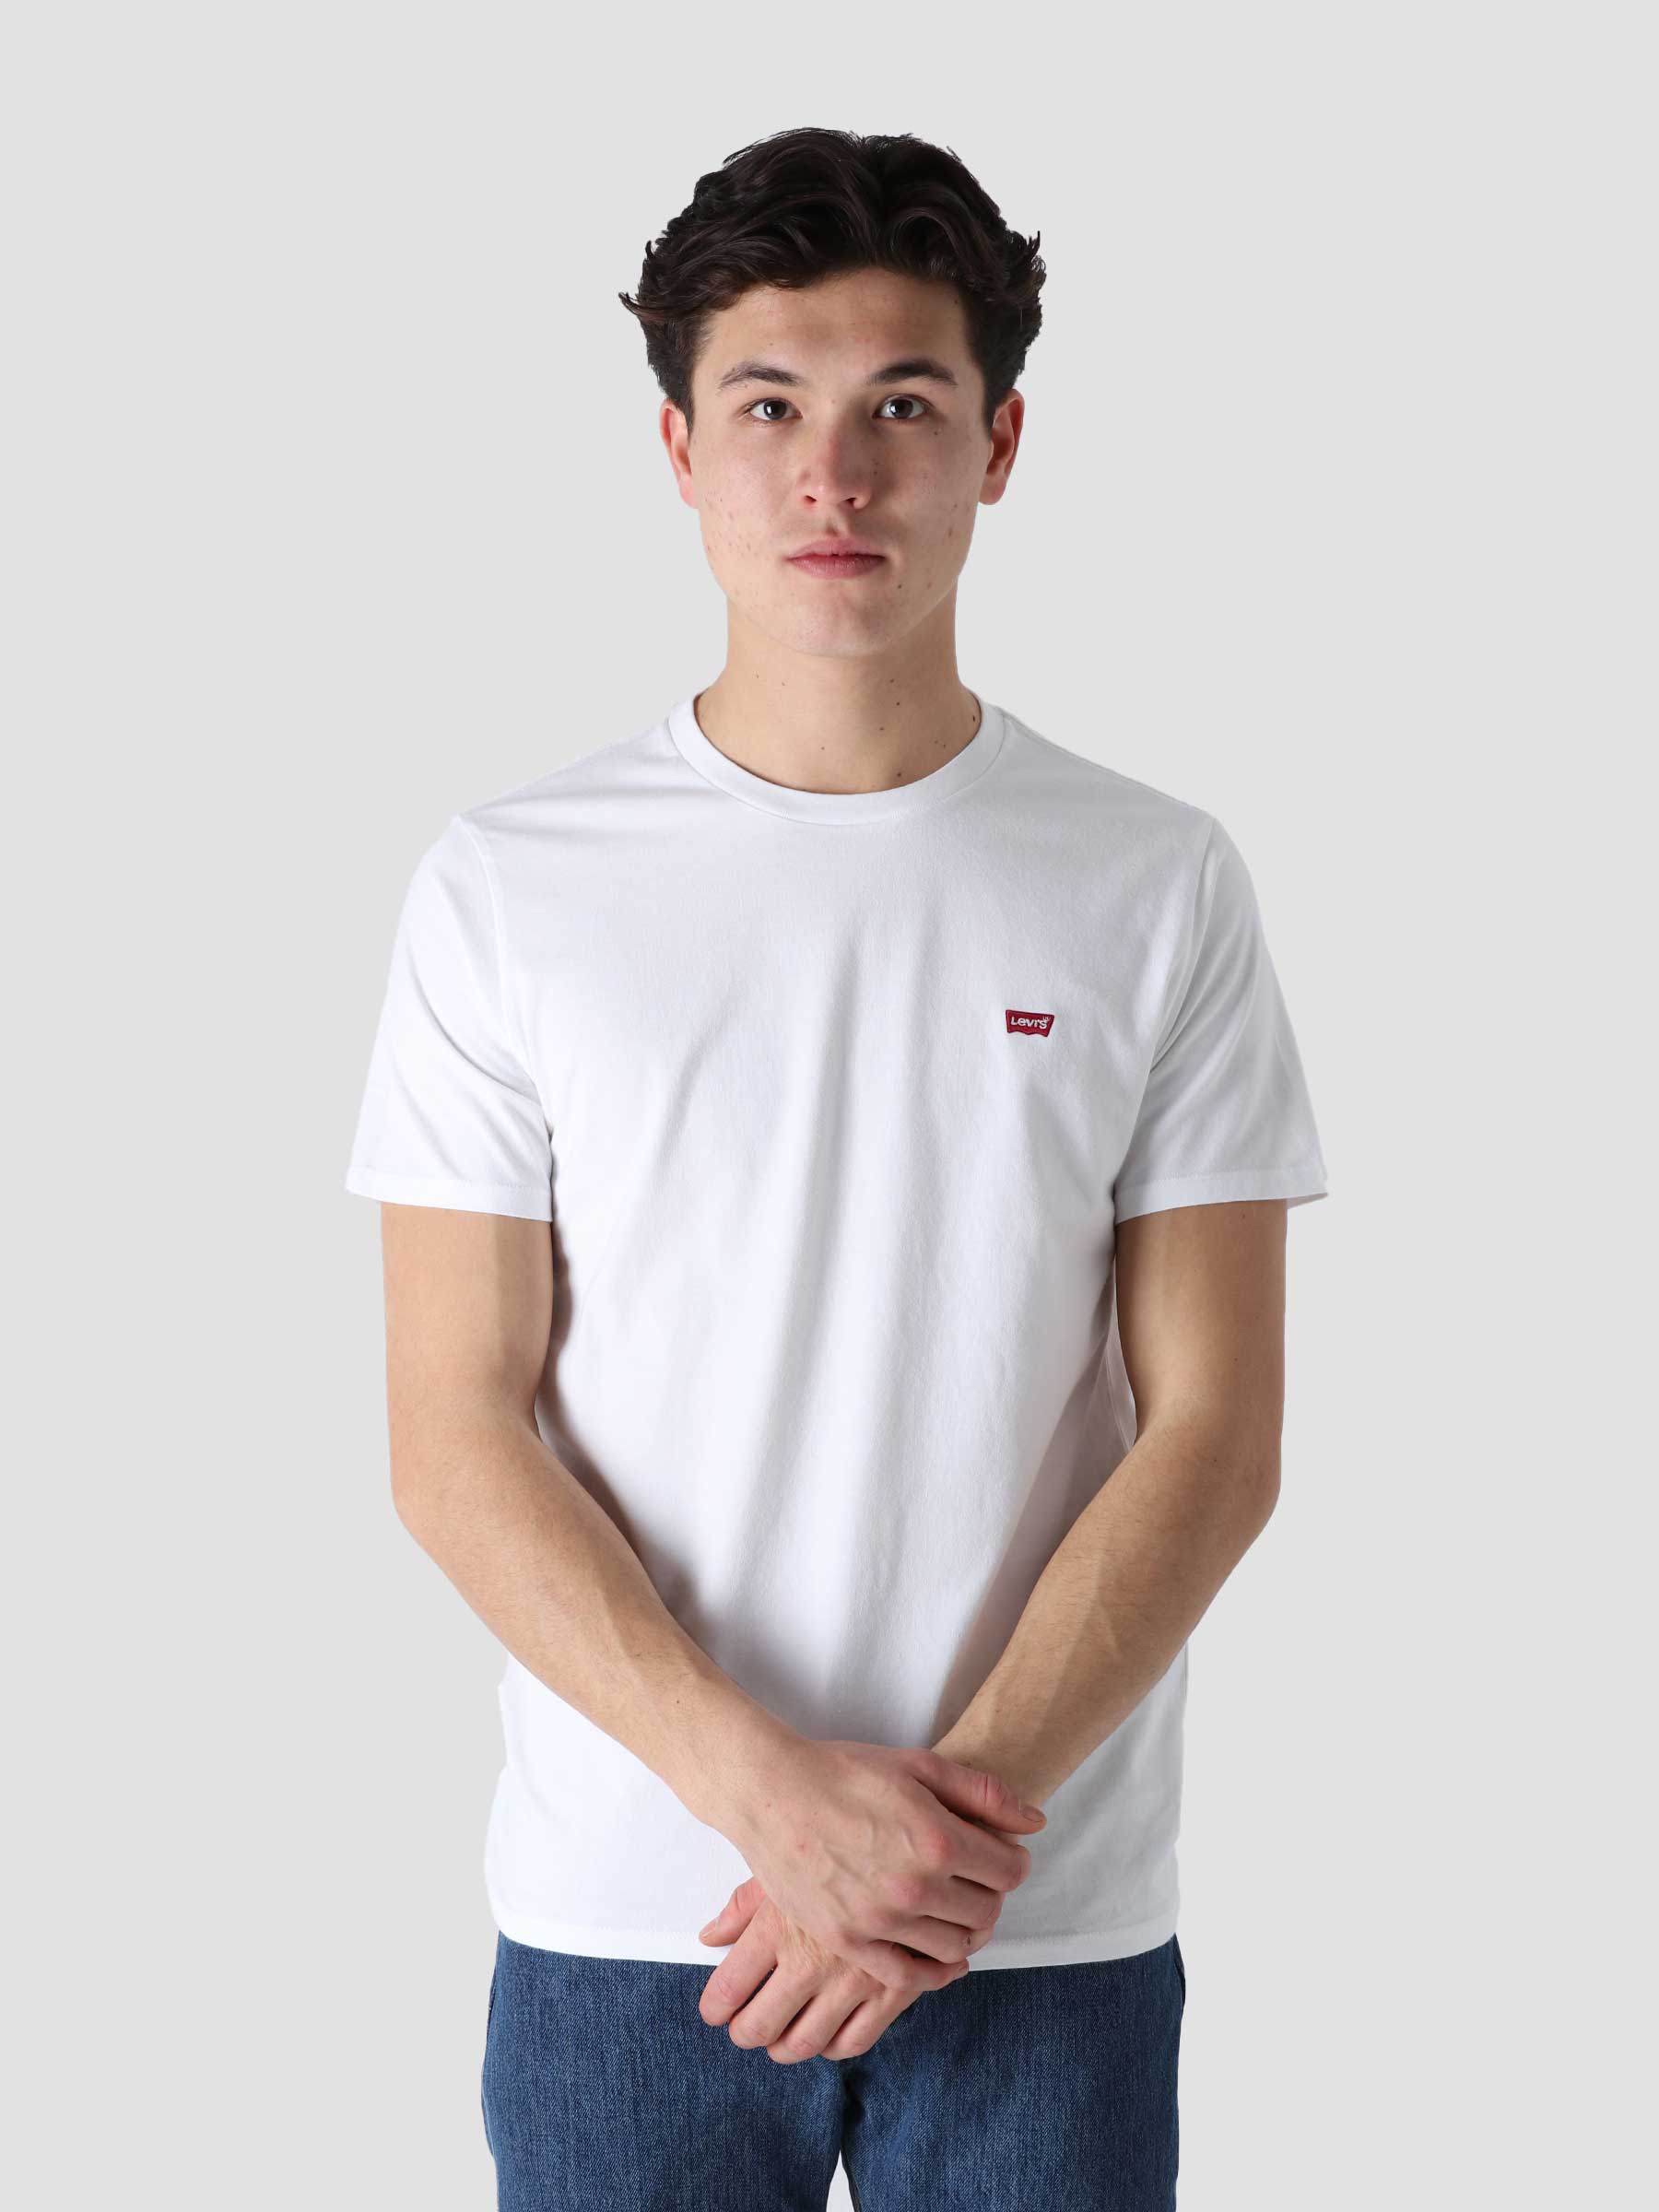 SS Original Hm T-Shirt White + 56605-0000